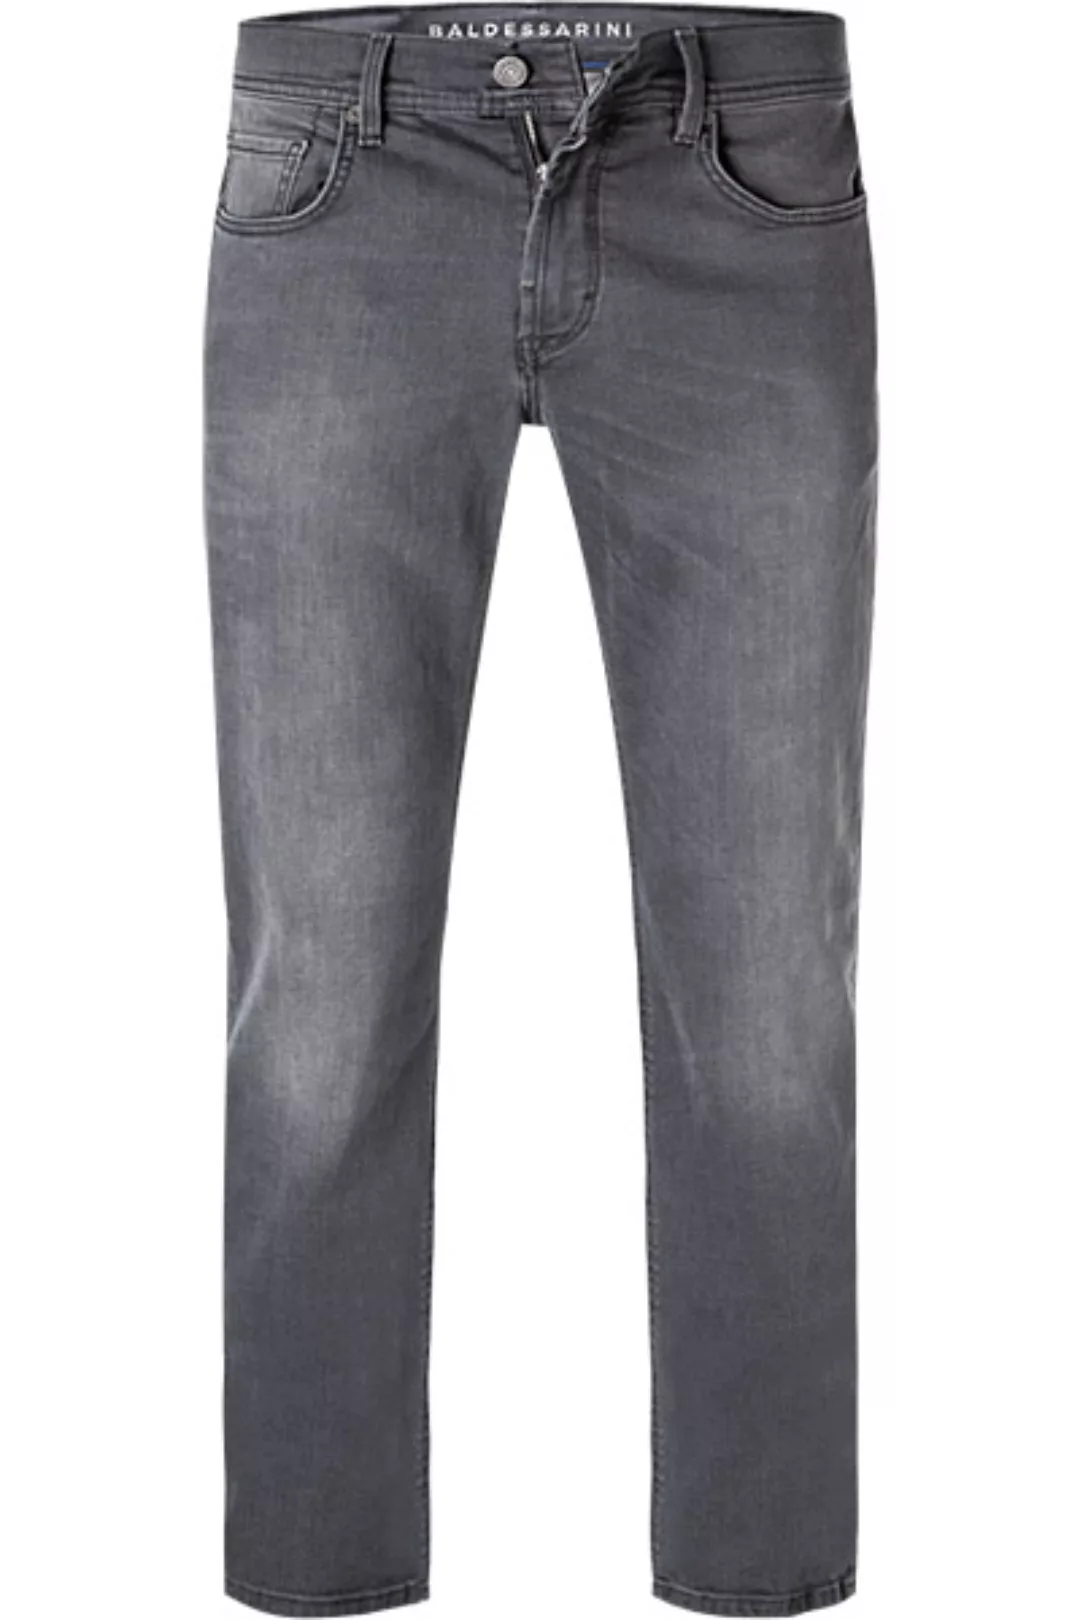 BALDESSARINI Jeans grau 16502/000/01495/96 günstig online kaufen